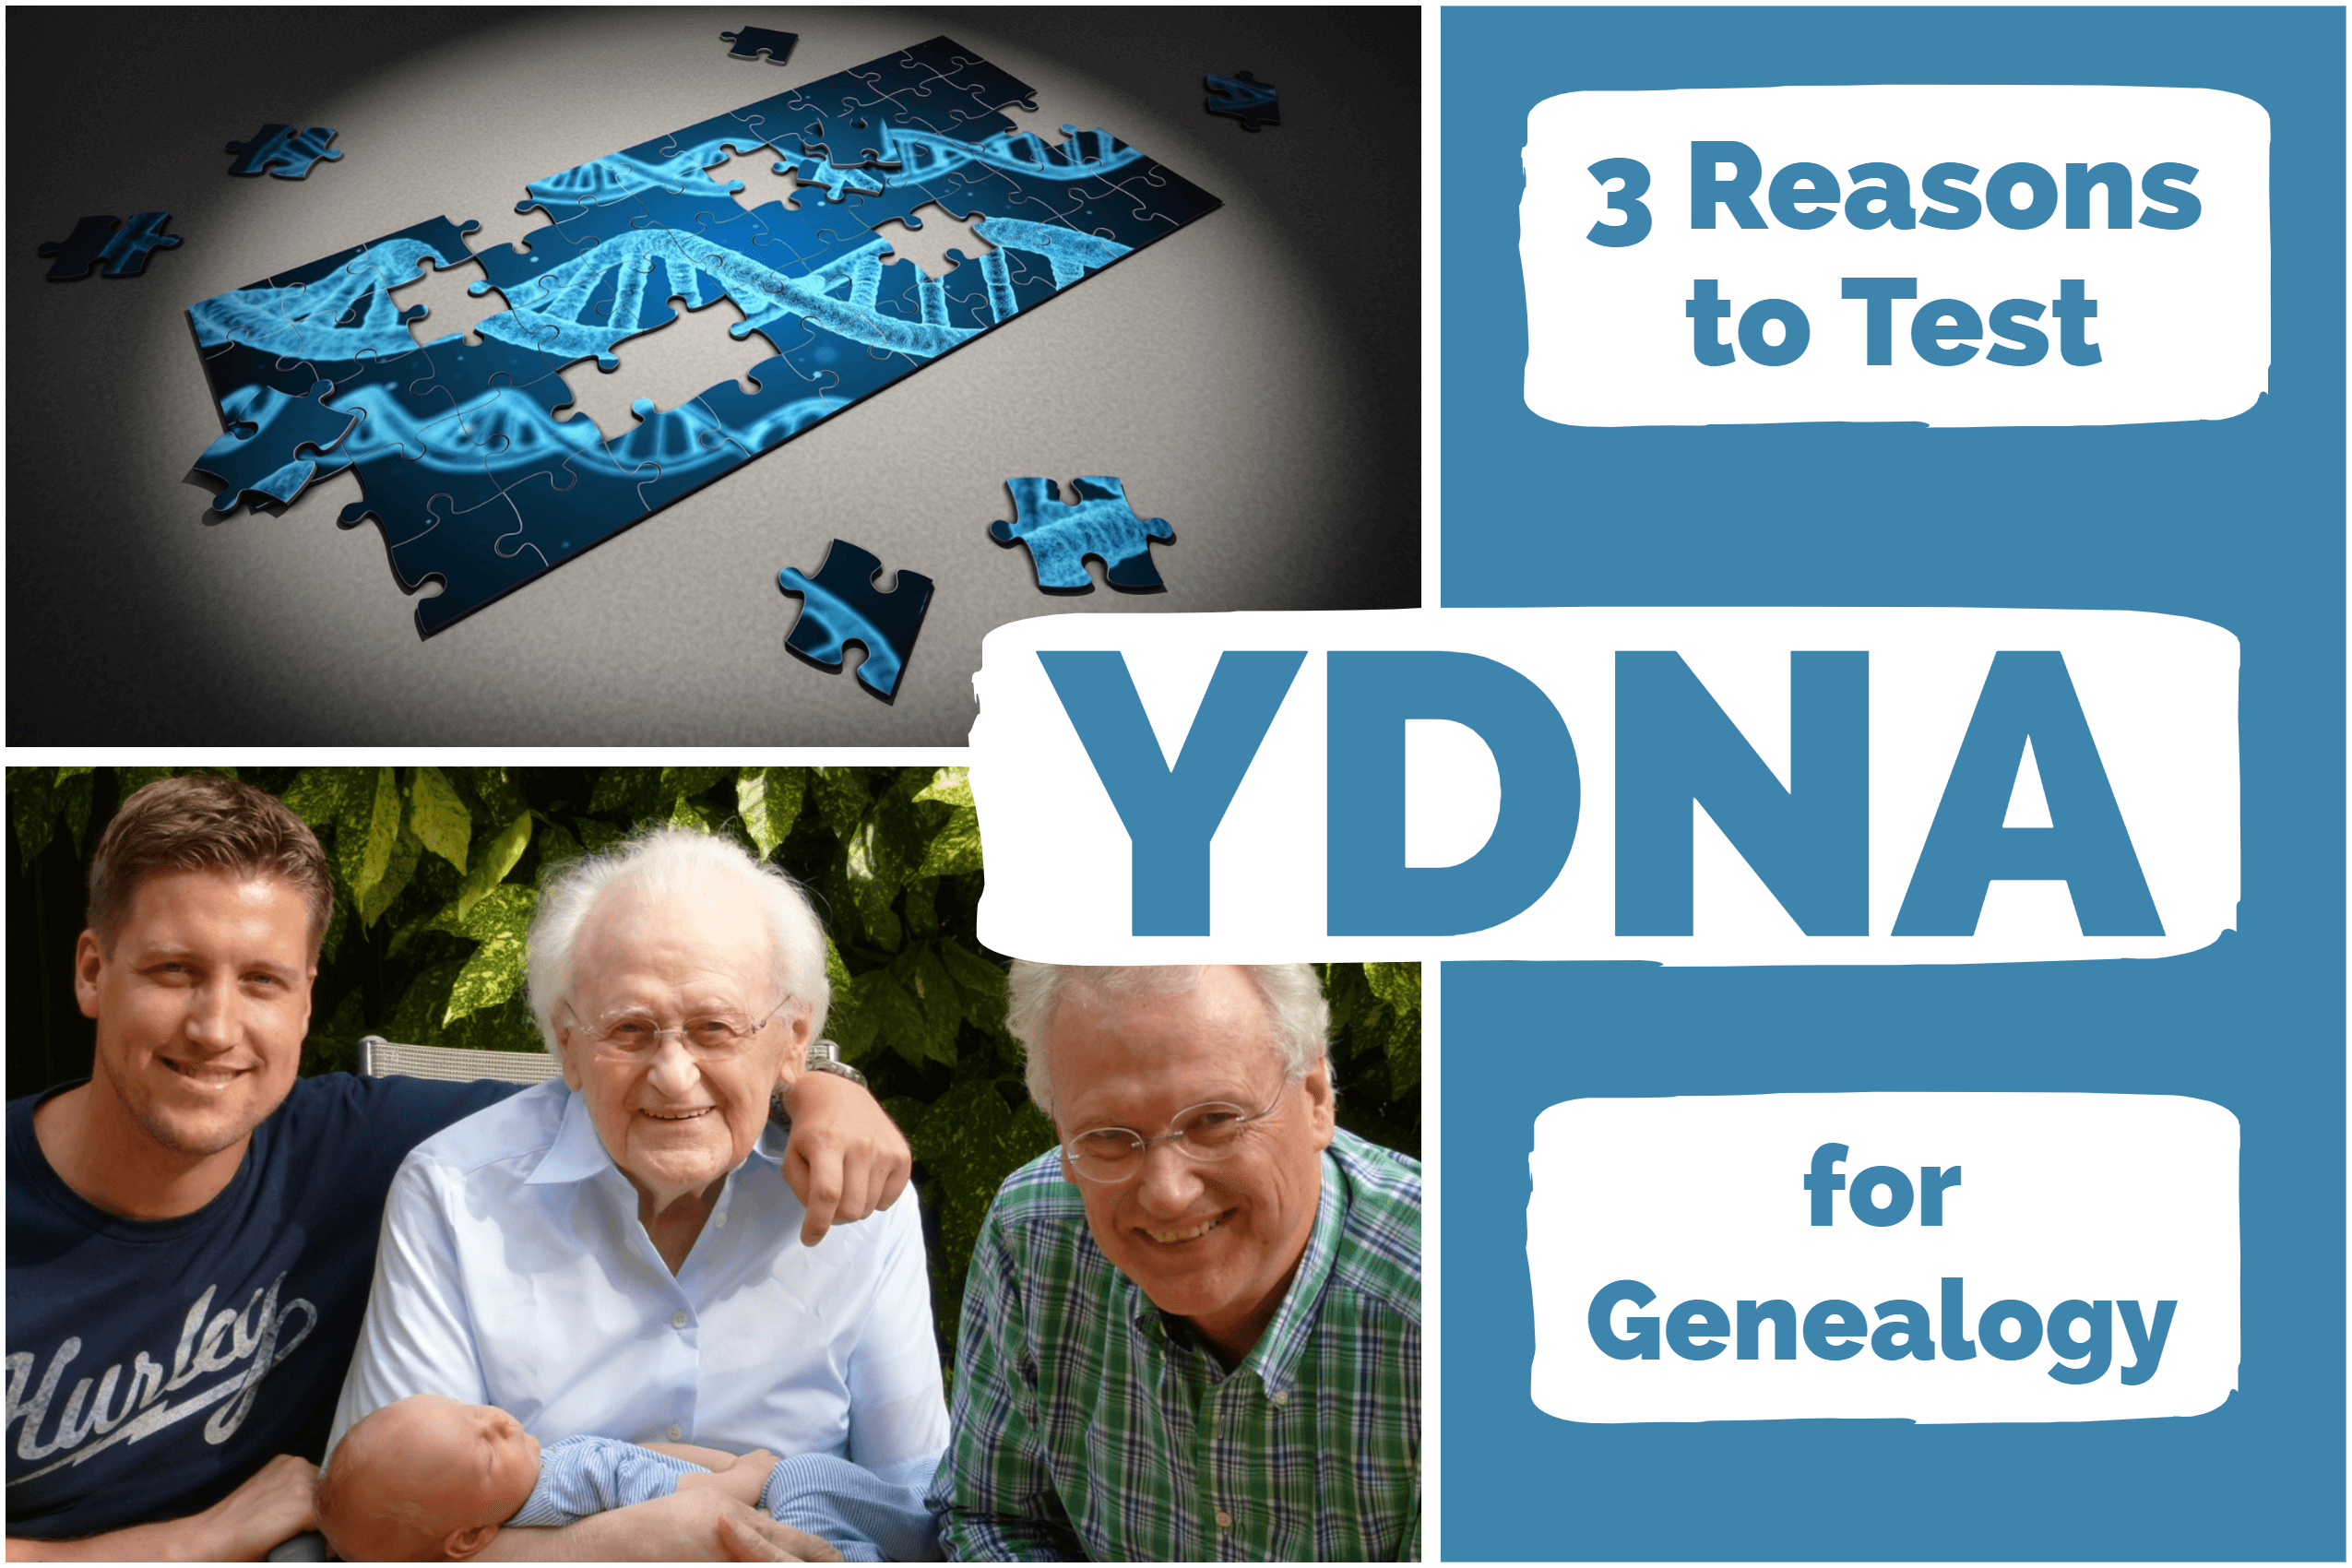 YDNA for Genealogy: 3 Scenarios When YDNA is Useful